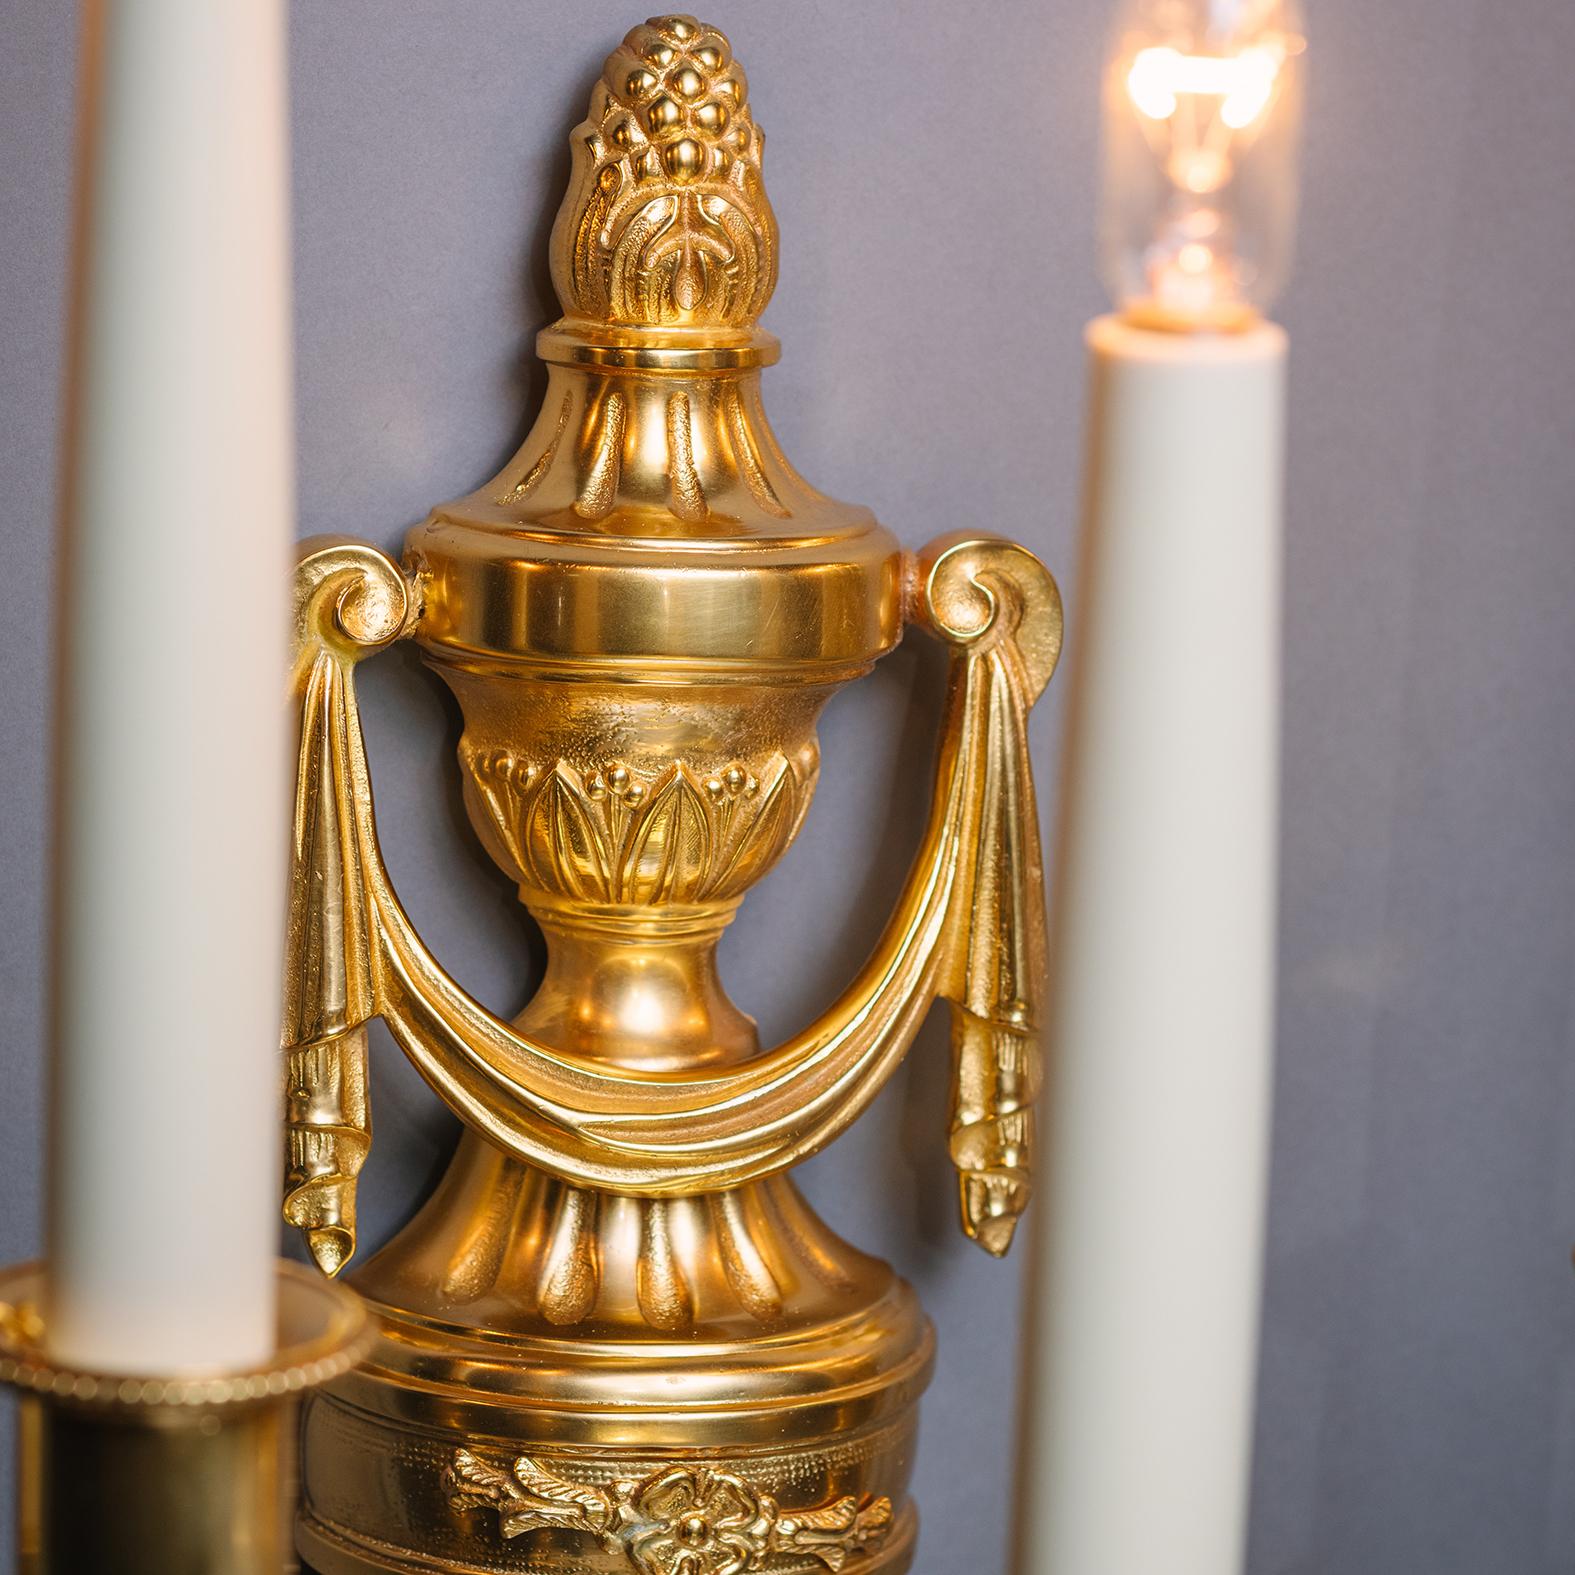 Paire d'appliques murales à cinq lumières en bronze doré de style Louis XVI. 

Chacune d'entre elles est ornée d'un plat arrière en forme de carquois surmonté d'un fleuron en forme d'urne classique. Délivrance de cinq branches portant la lettre 